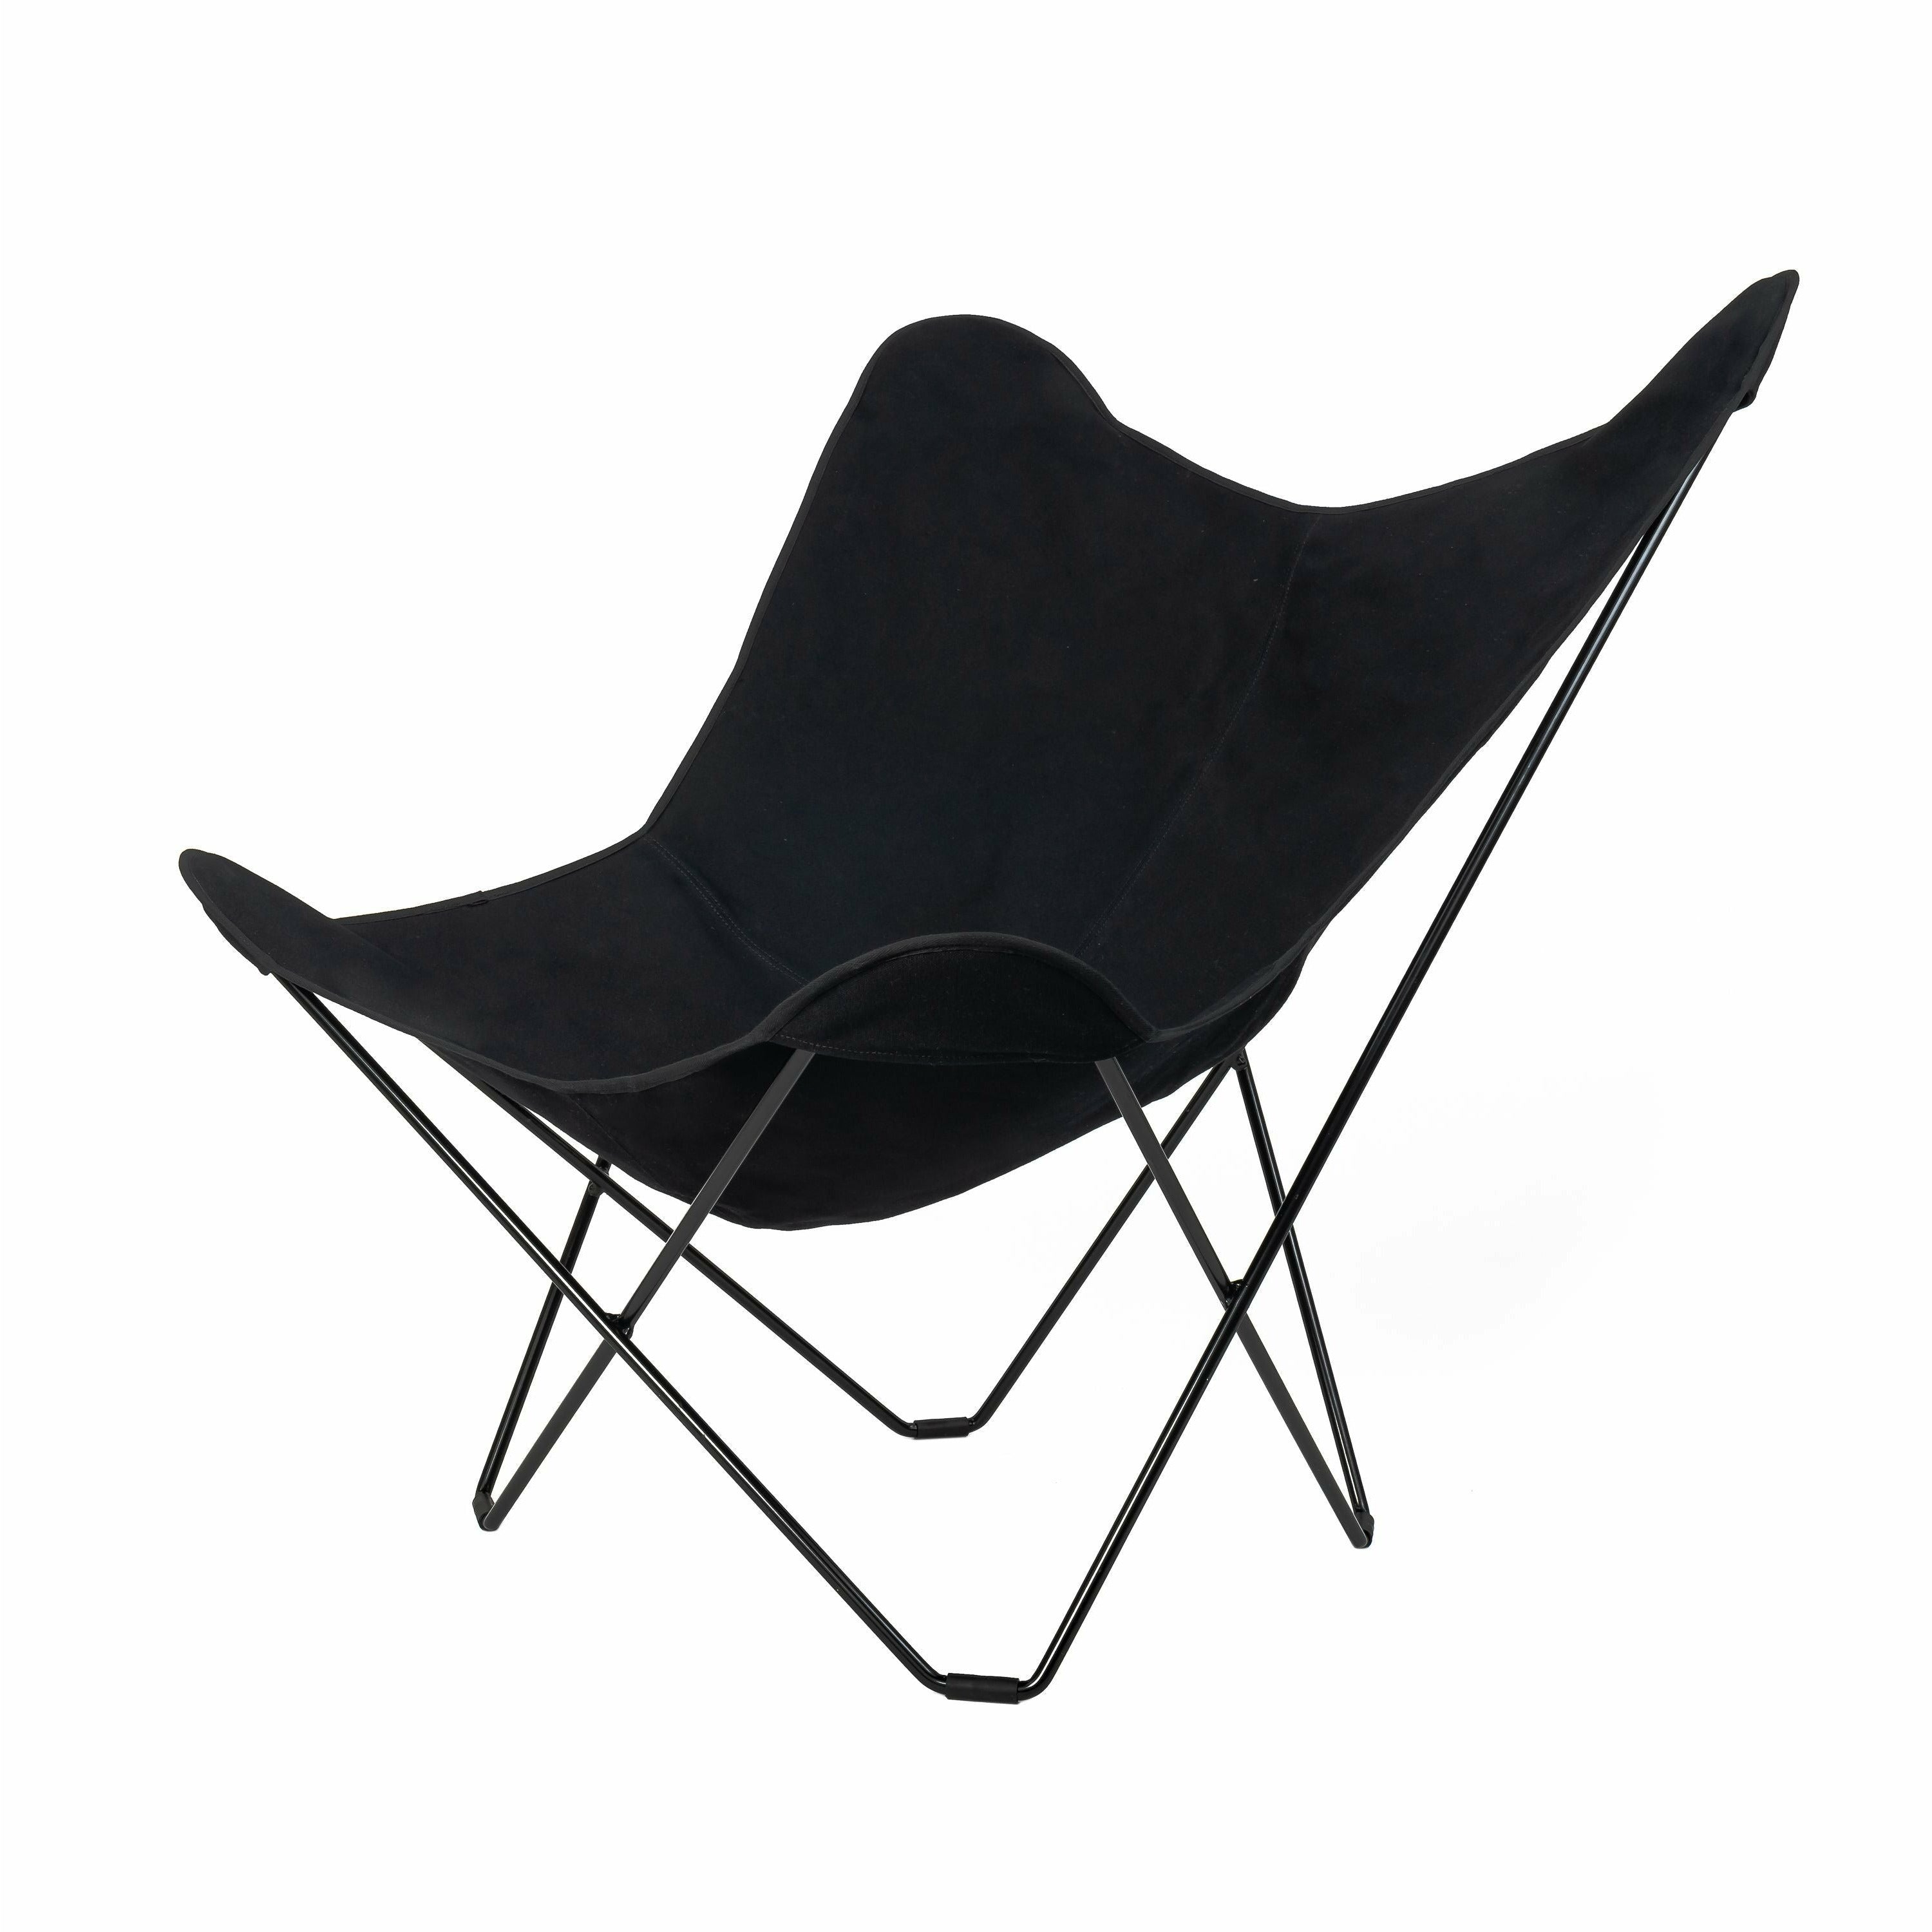 Cuero Cotton Canvas Mariposa stol, svart med svart ramme